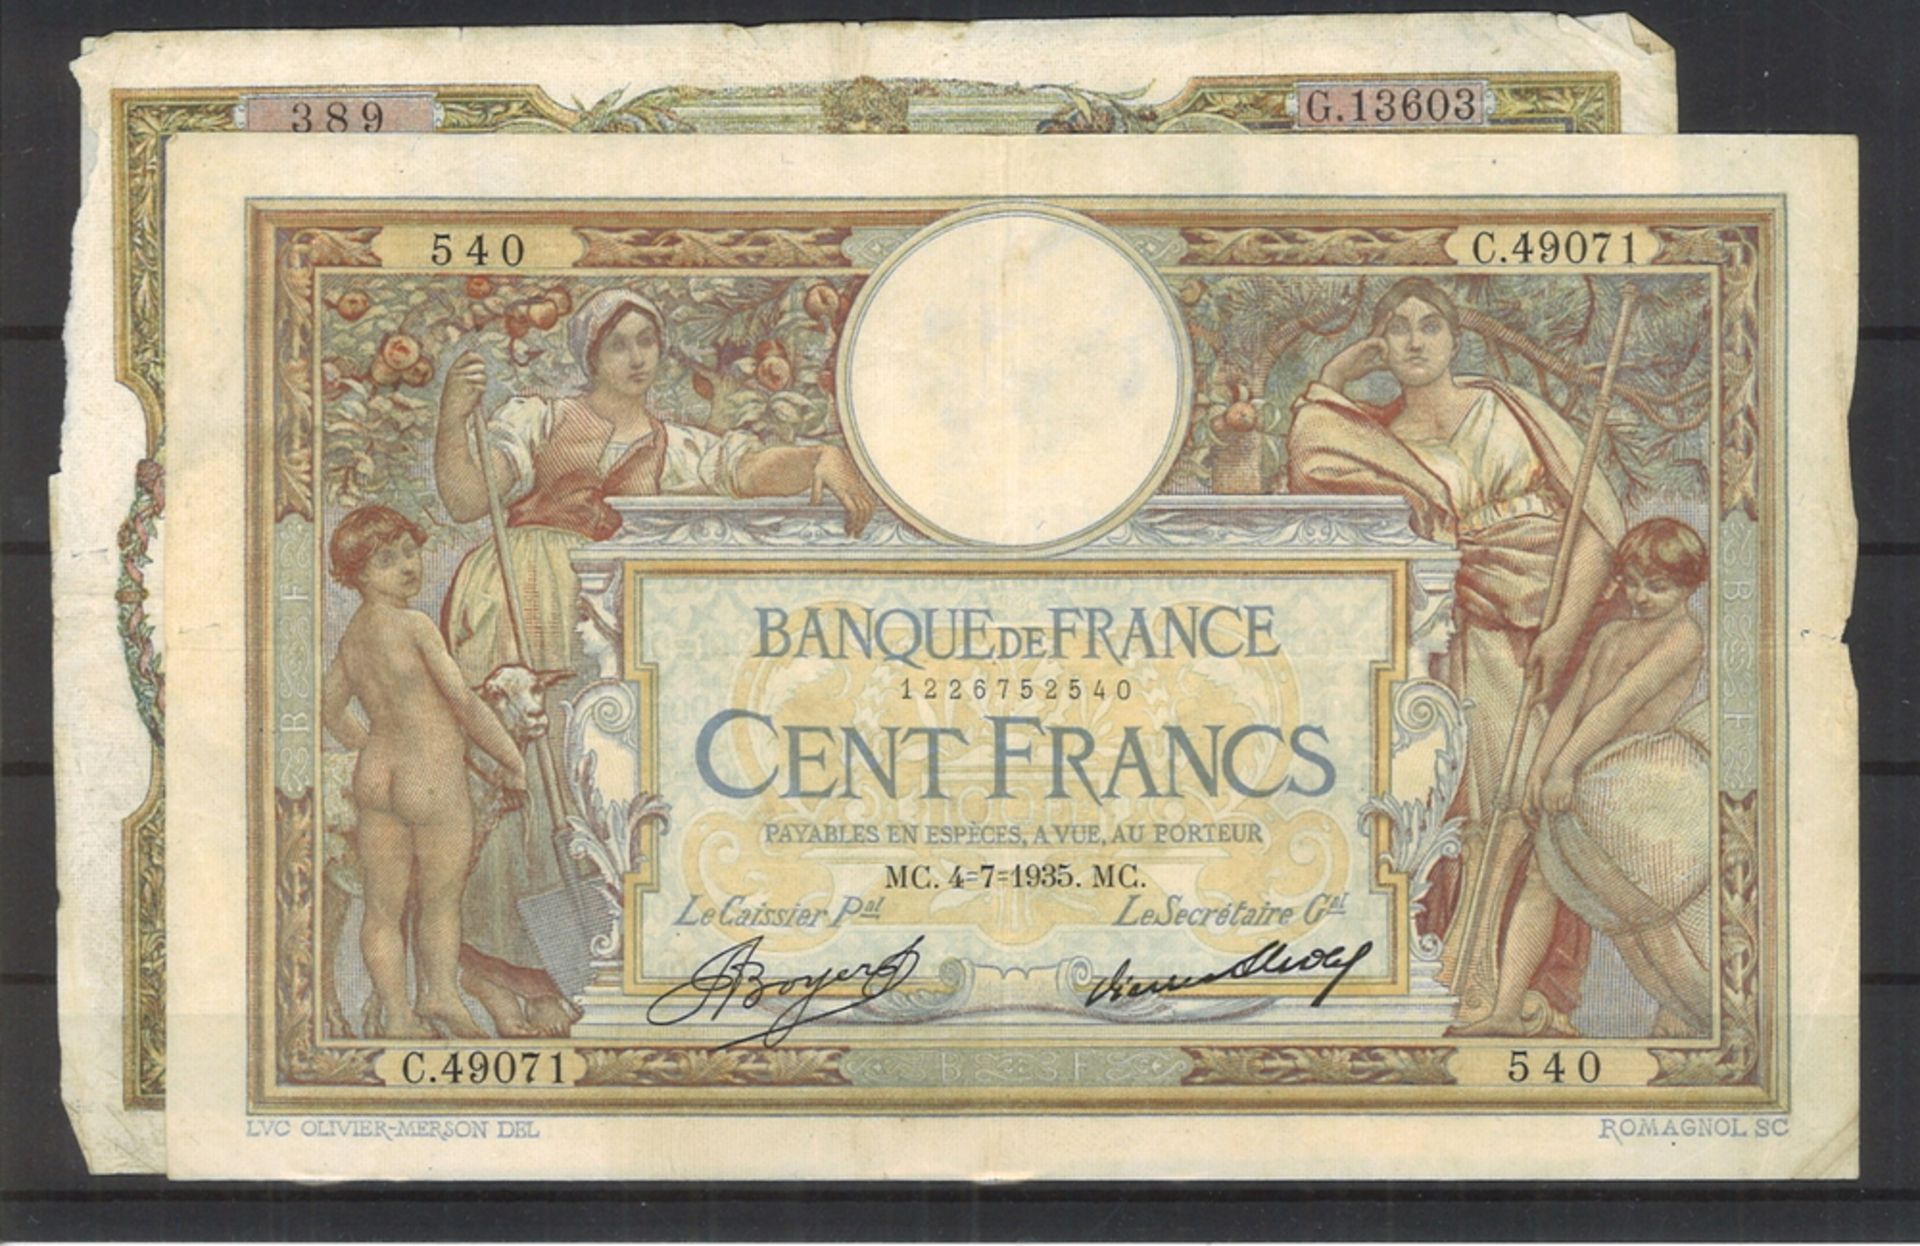 4 Banknoten Frankreich, stark gebraucht!